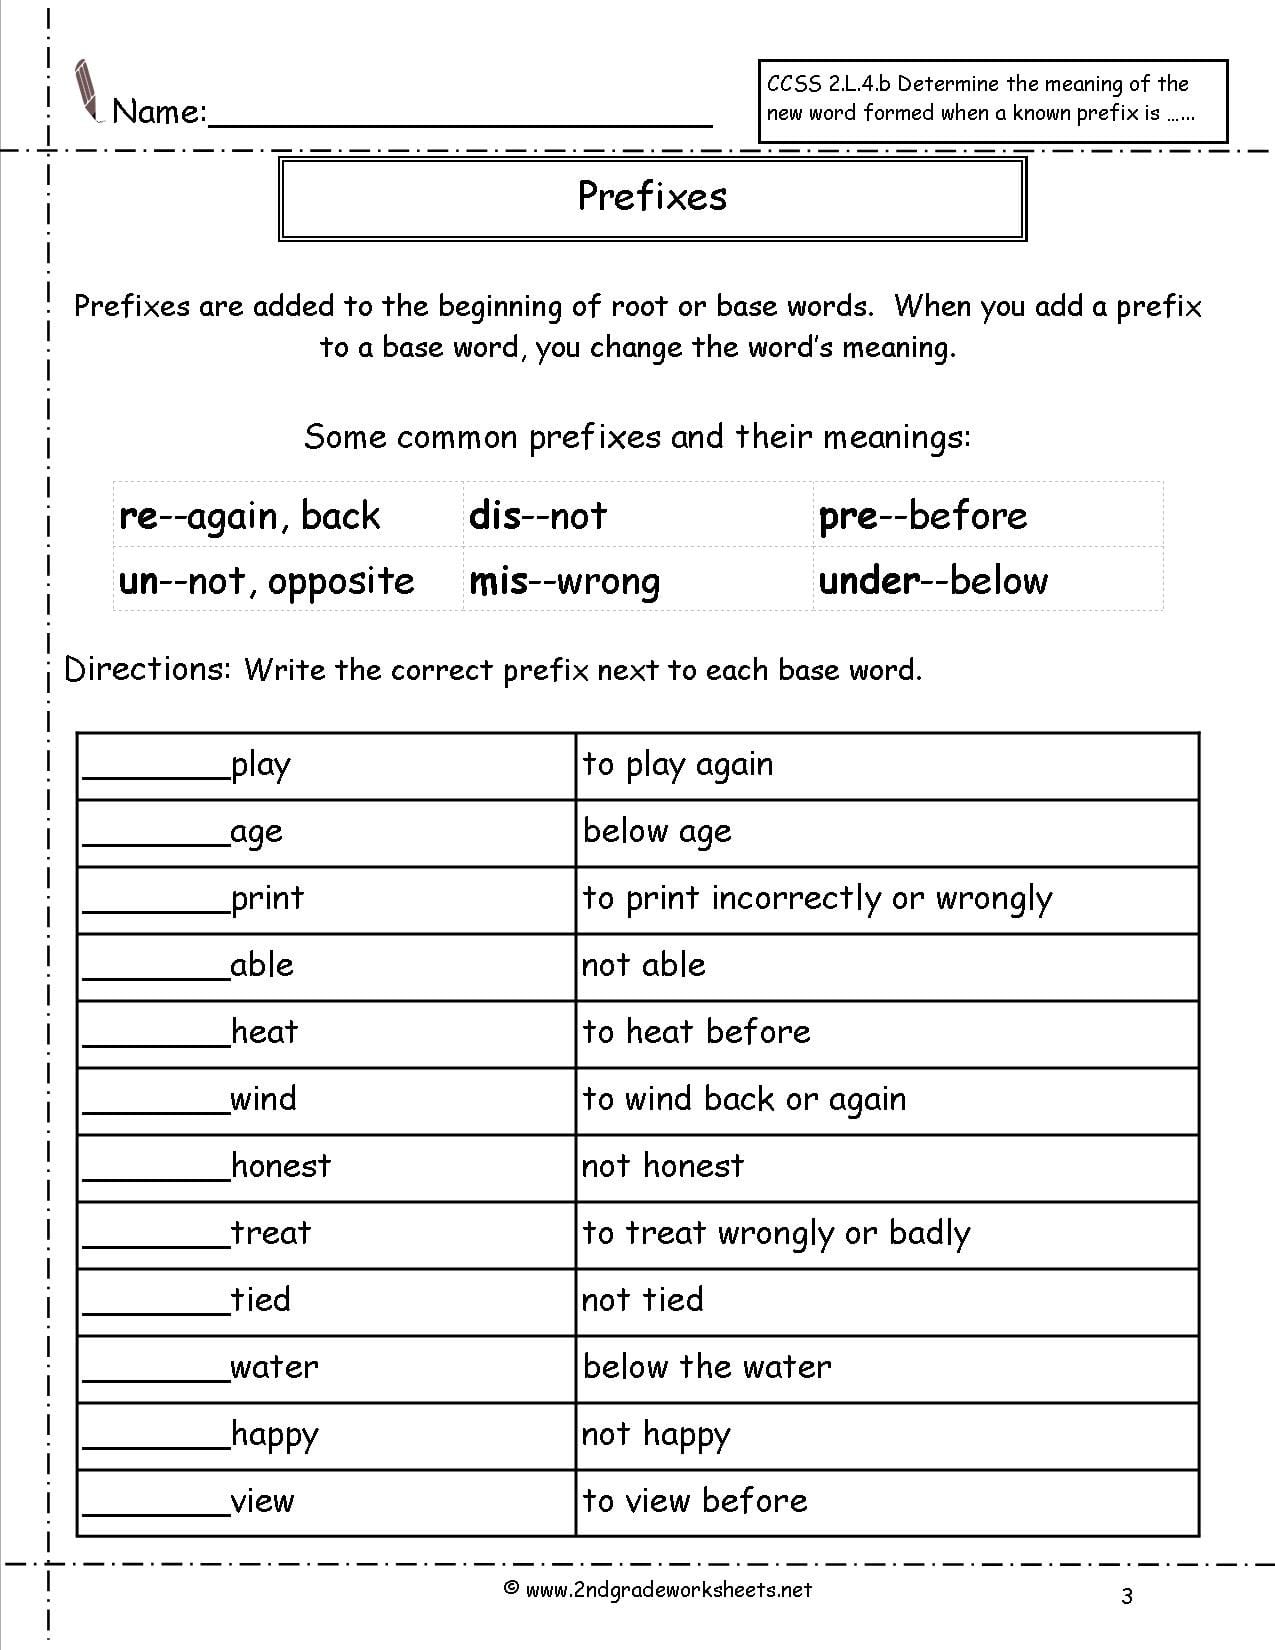 Second Grade Prefixes Worksheets Db excel